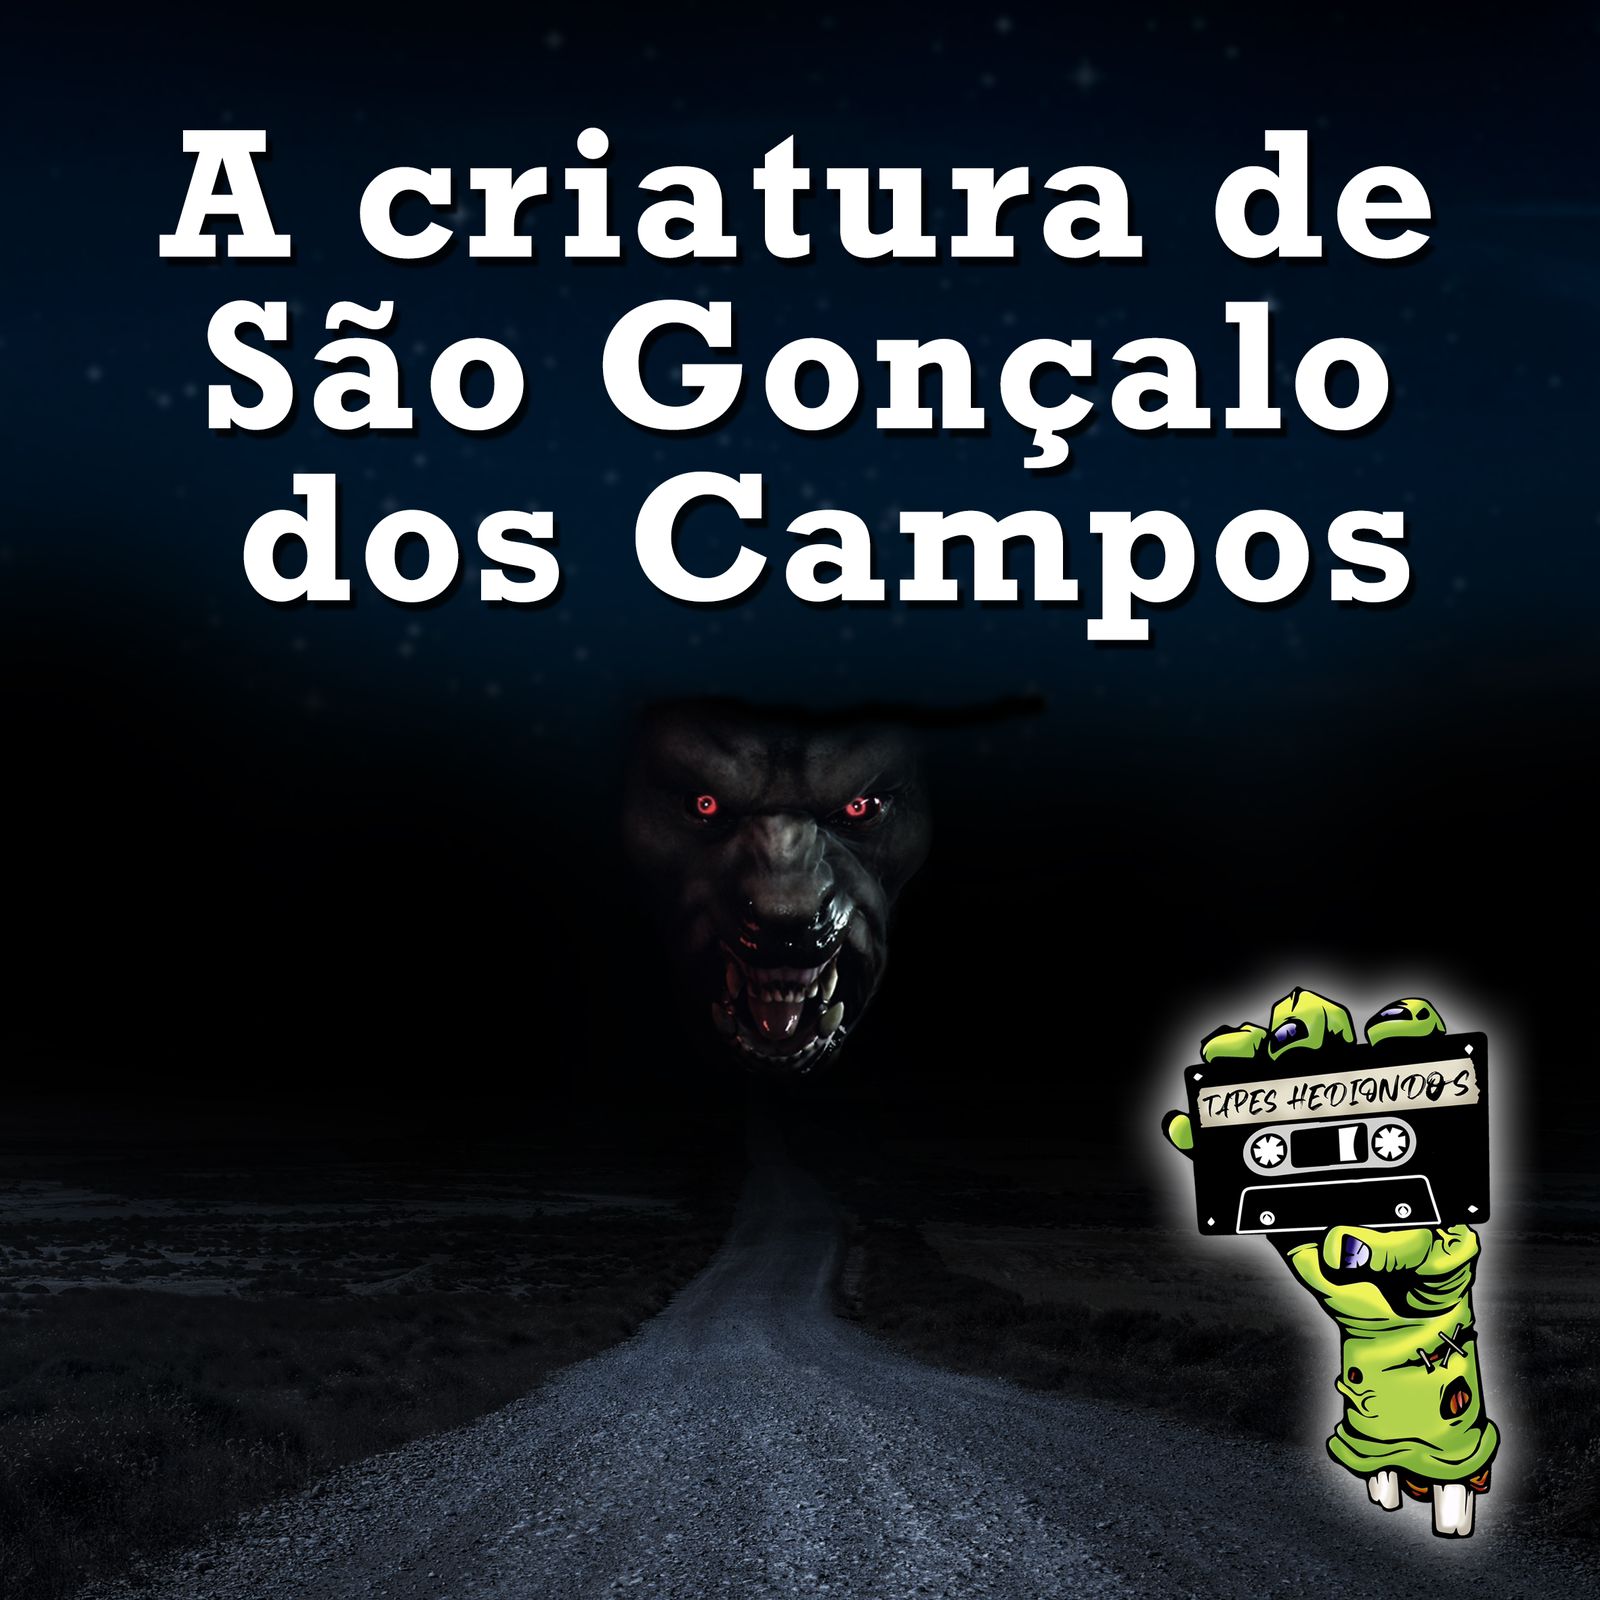 Tapes Hediondos - EP 1 - “A criatura de São Gonçalo dos Campos"